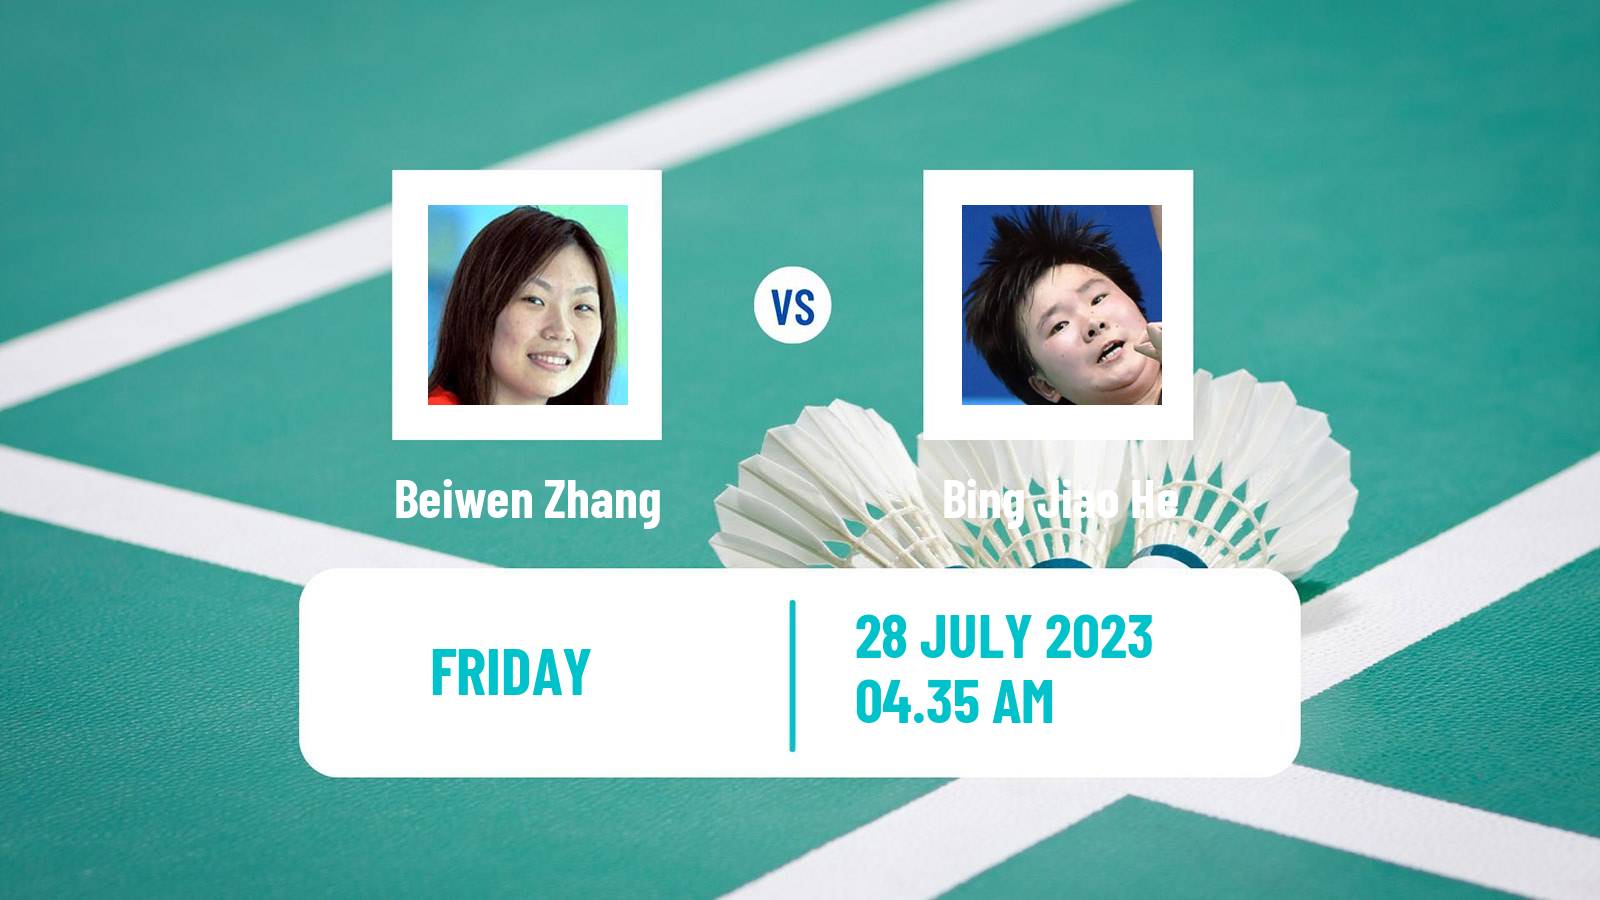 Badminton BWF World Tour Japan Open Women Beiwen Zhang - Bing Jiao He